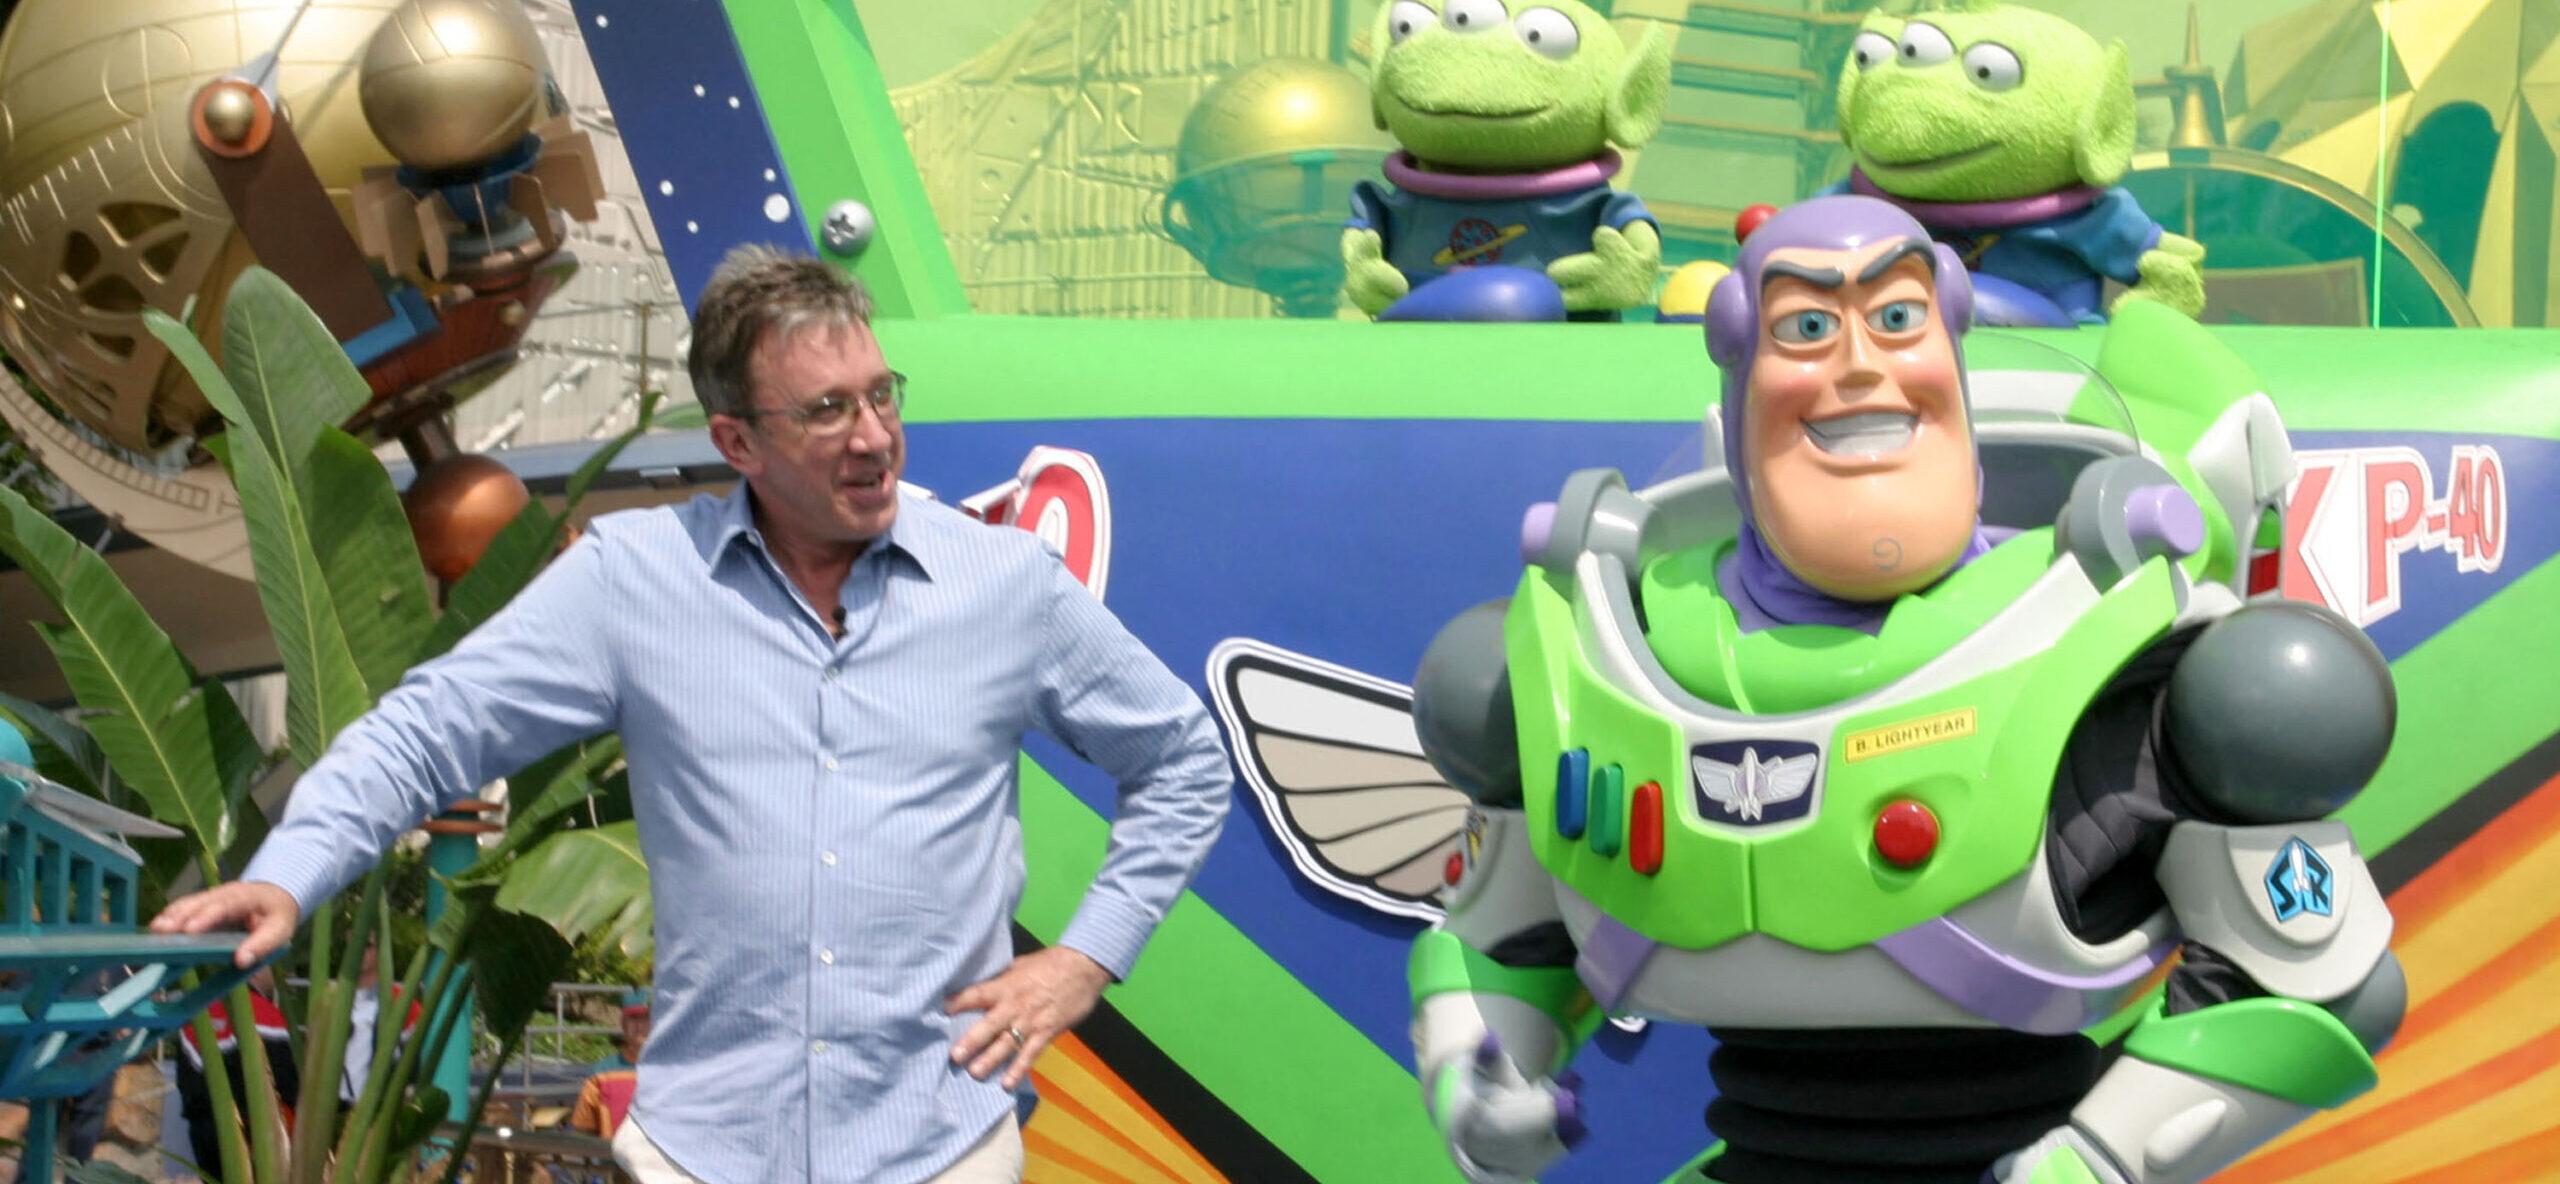 A ideia de Toy Story 5 de Tim Allen é ótima (mas tornaria Toy